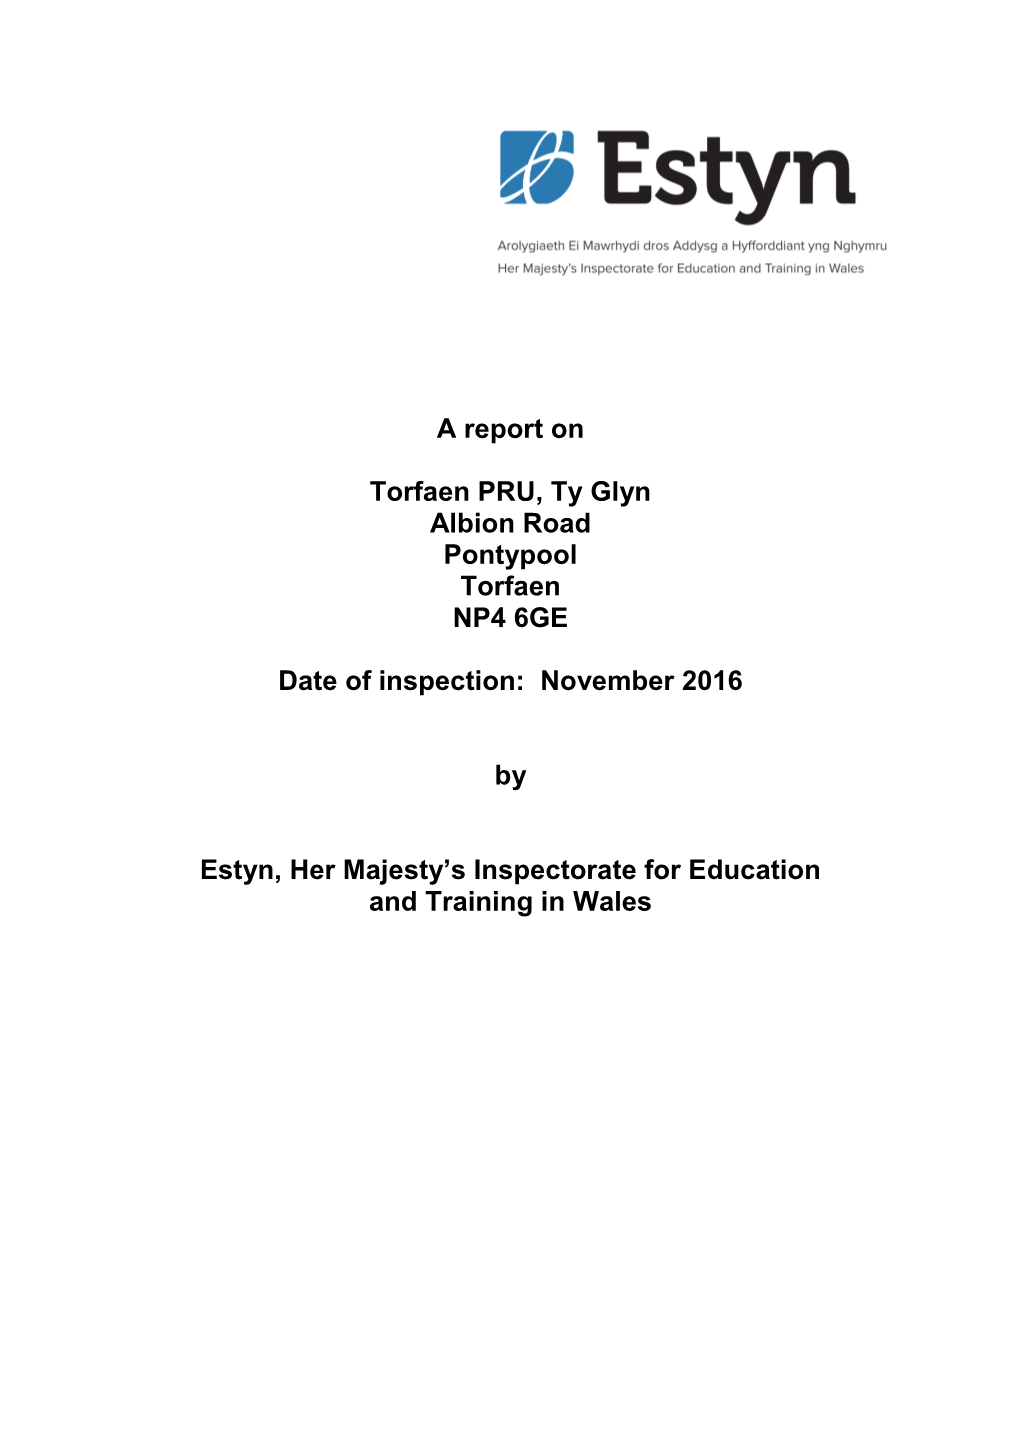 Inspection Report Torfaen PRU, Ty Glyn 2017